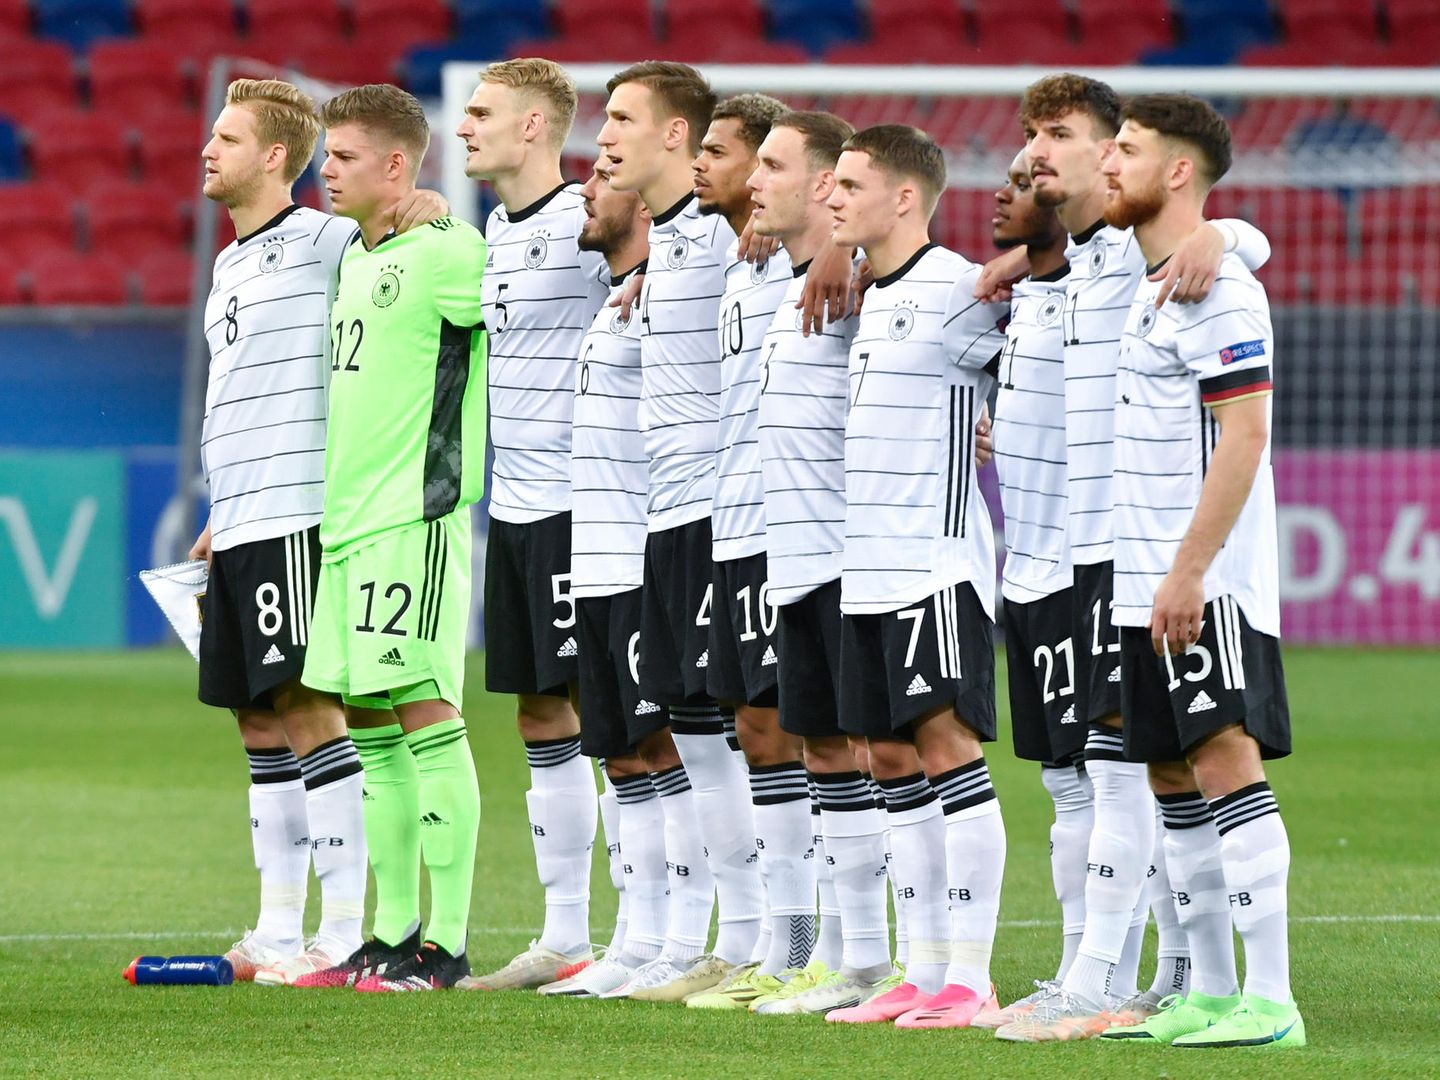 U21-EM 2021 Finale im Free TV und Live-Stream Deutschland gegen Portugal STERN.de